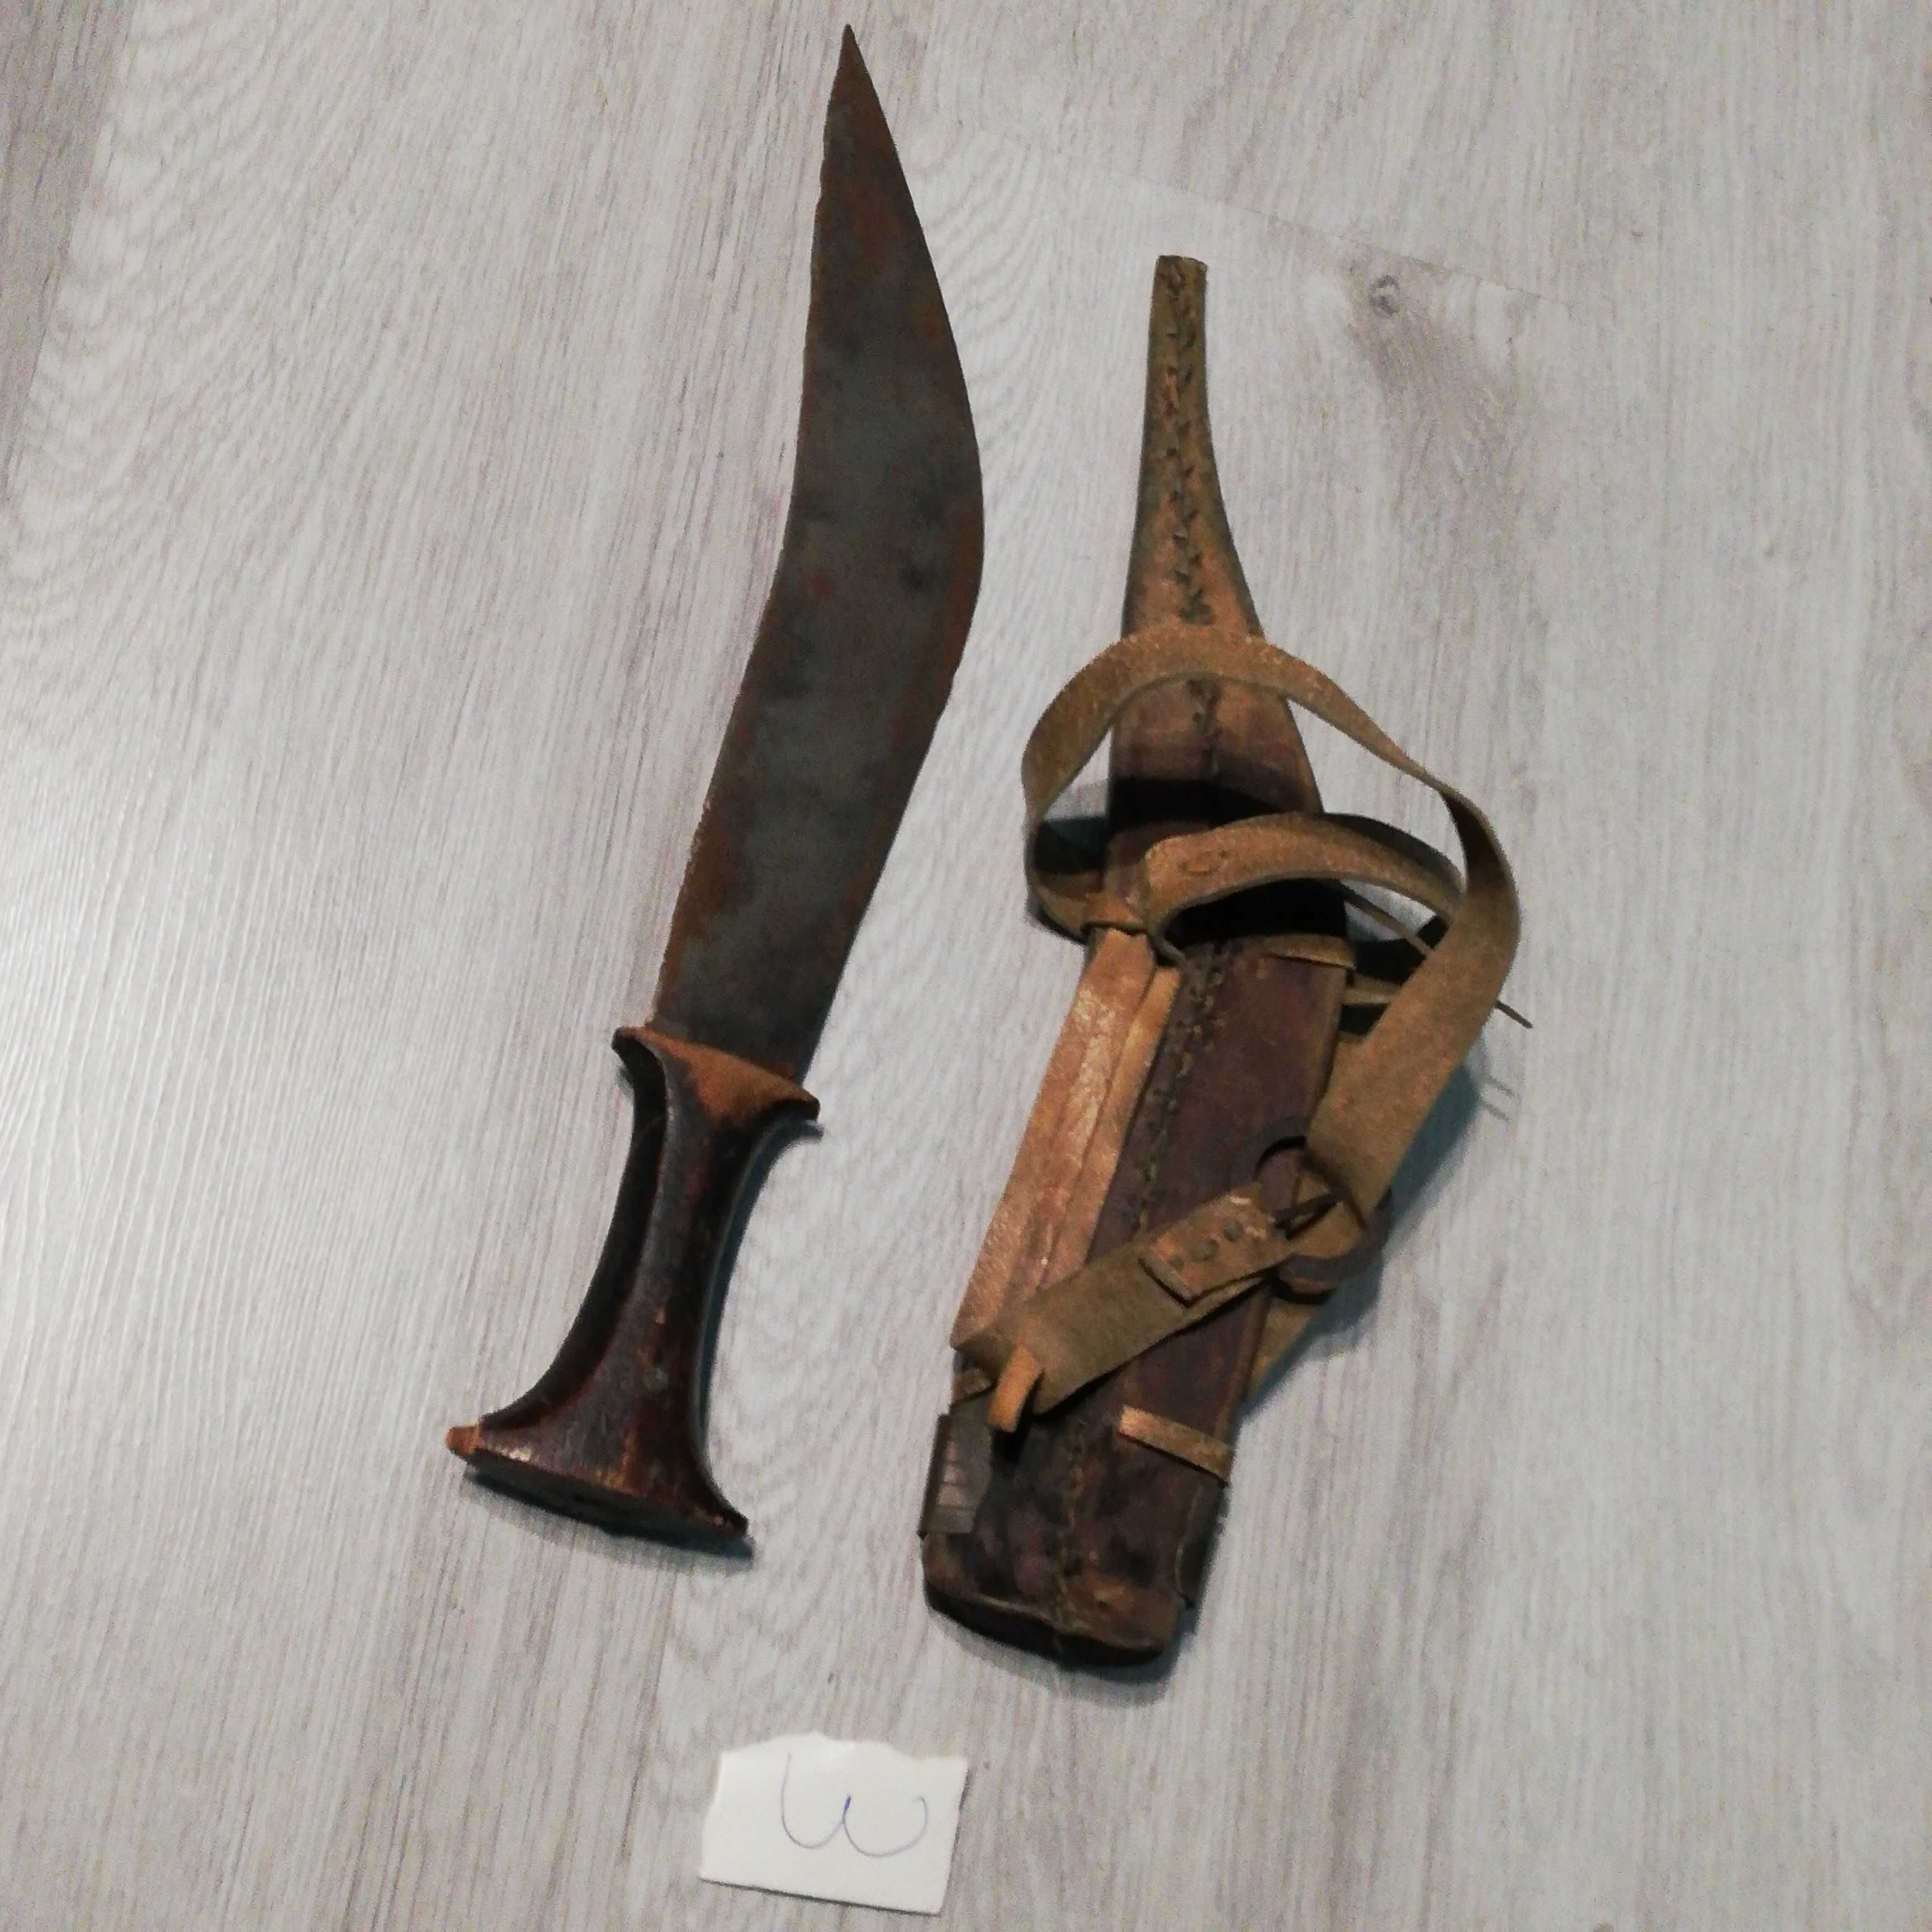 Автентични ножове КУКРИ и Африкански племенни ножове. Цени 50-110 лв